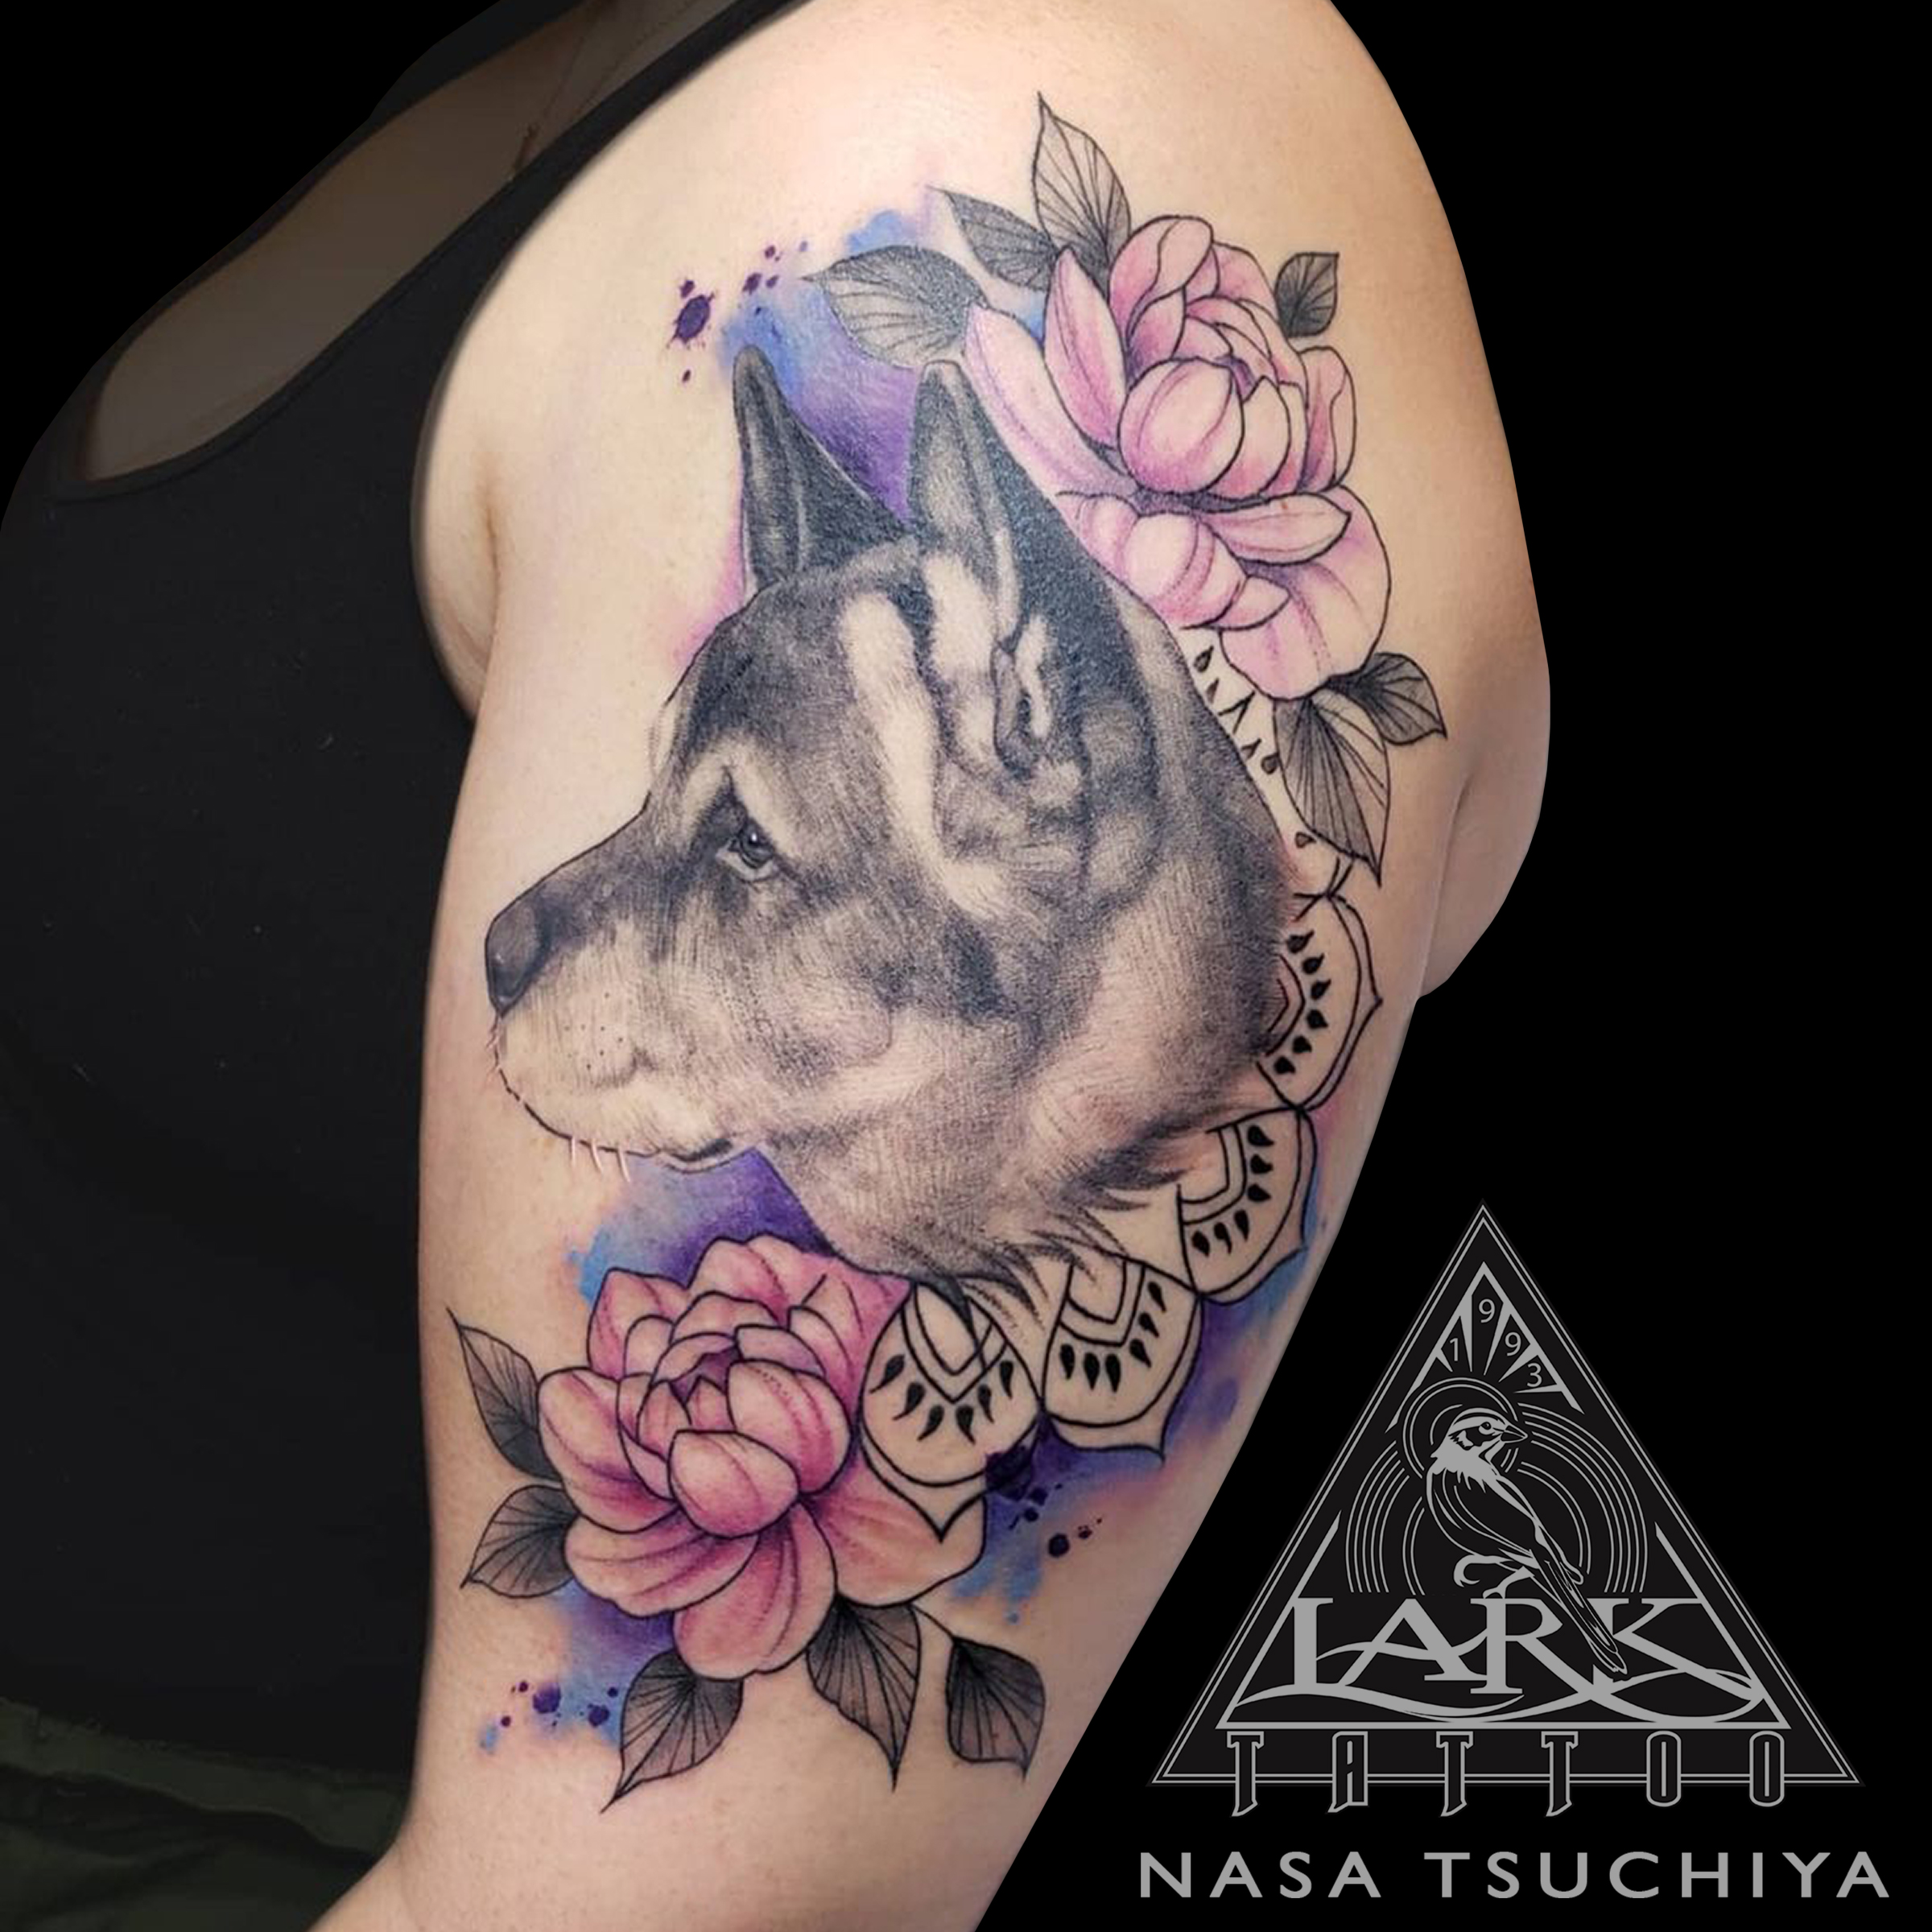 New tattoo uploaded to Nasa Tsuchiya's portfolio 10/29/2021 - -